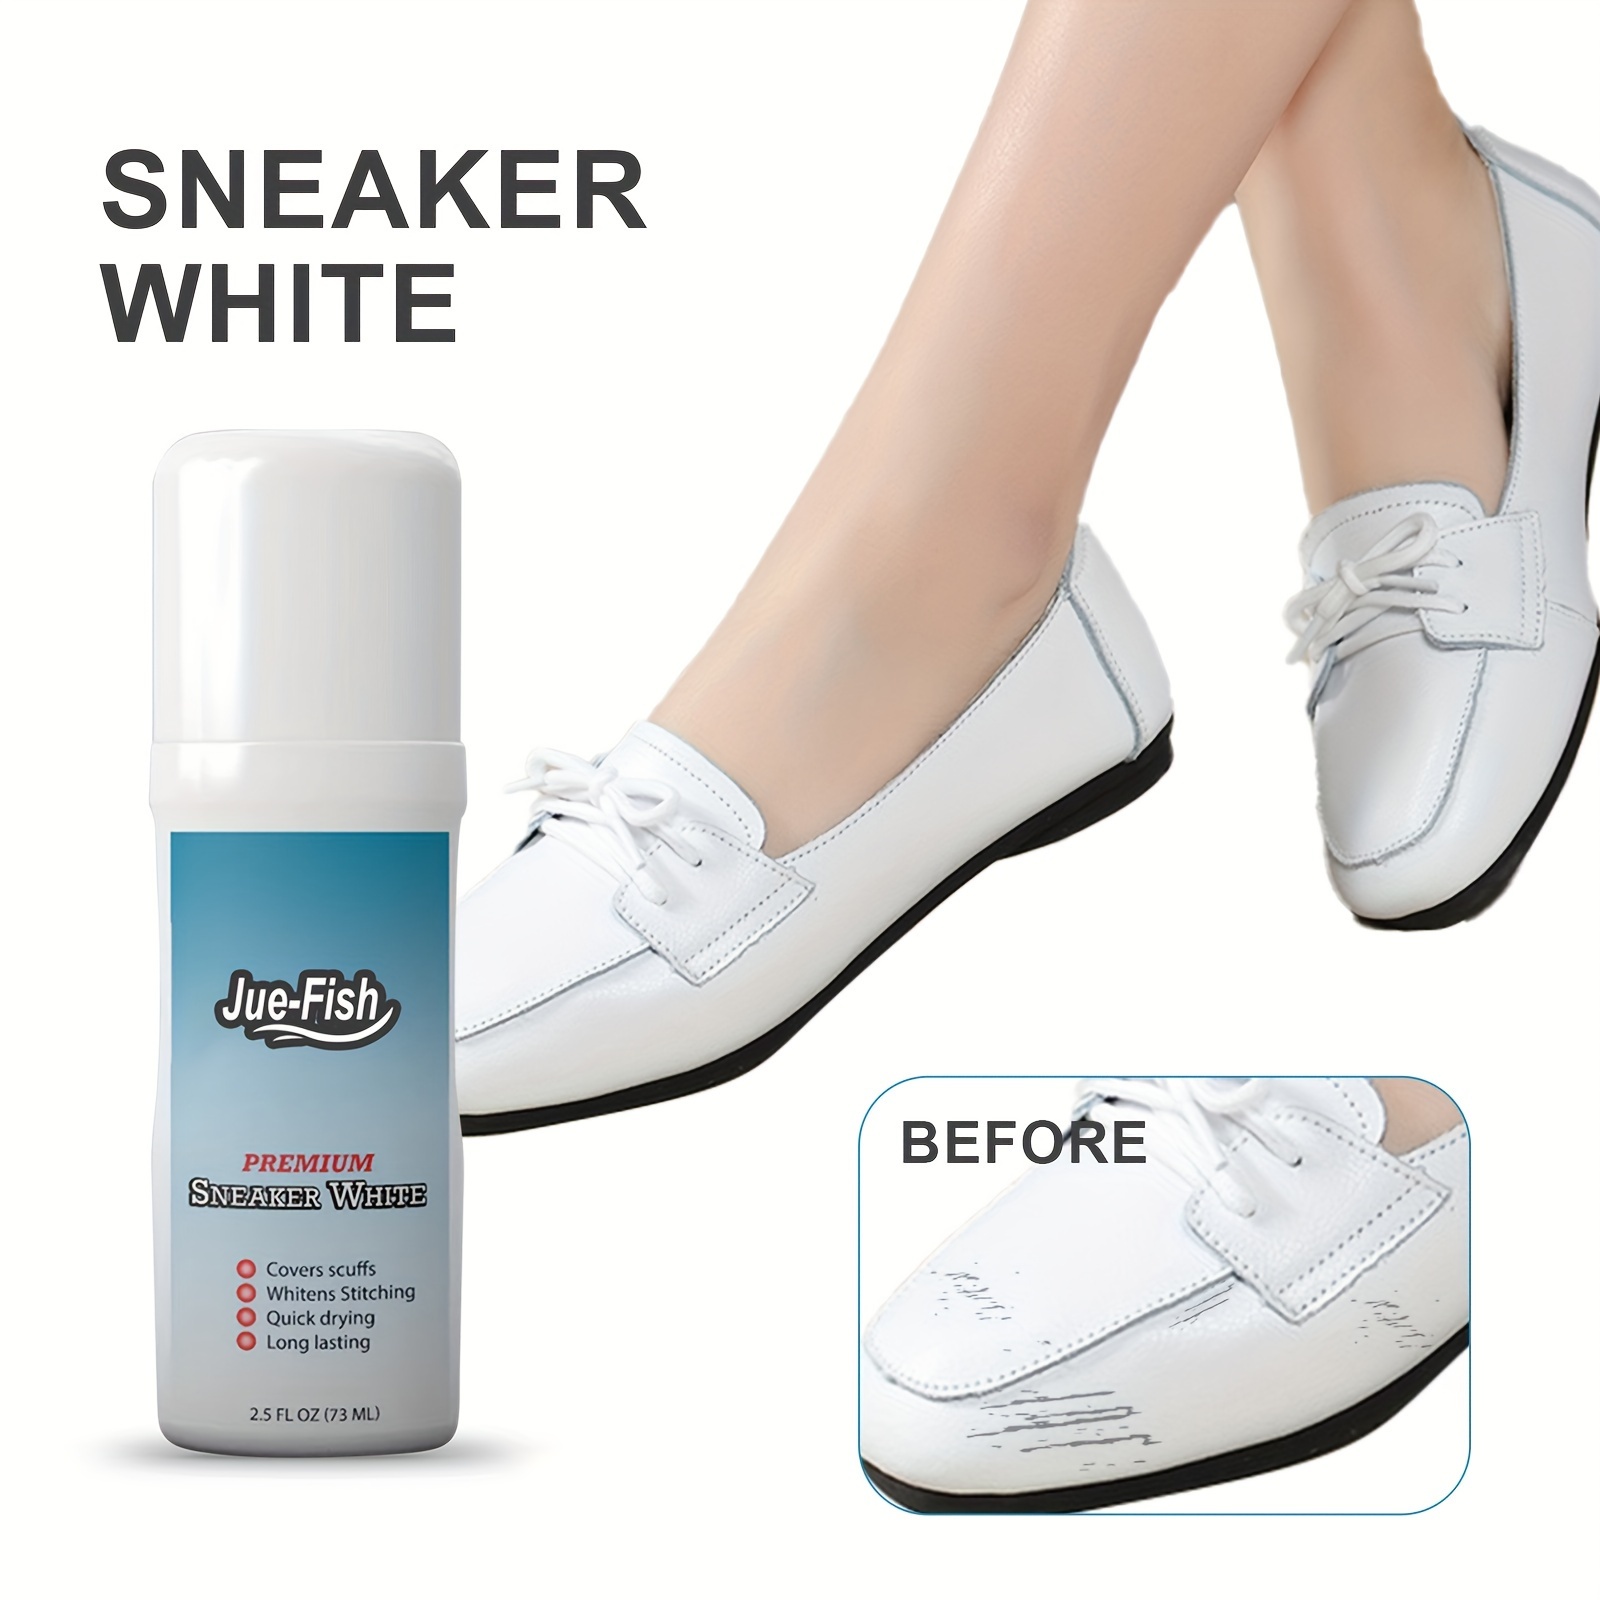 Limpiador de zapatos blancos Blanqueador